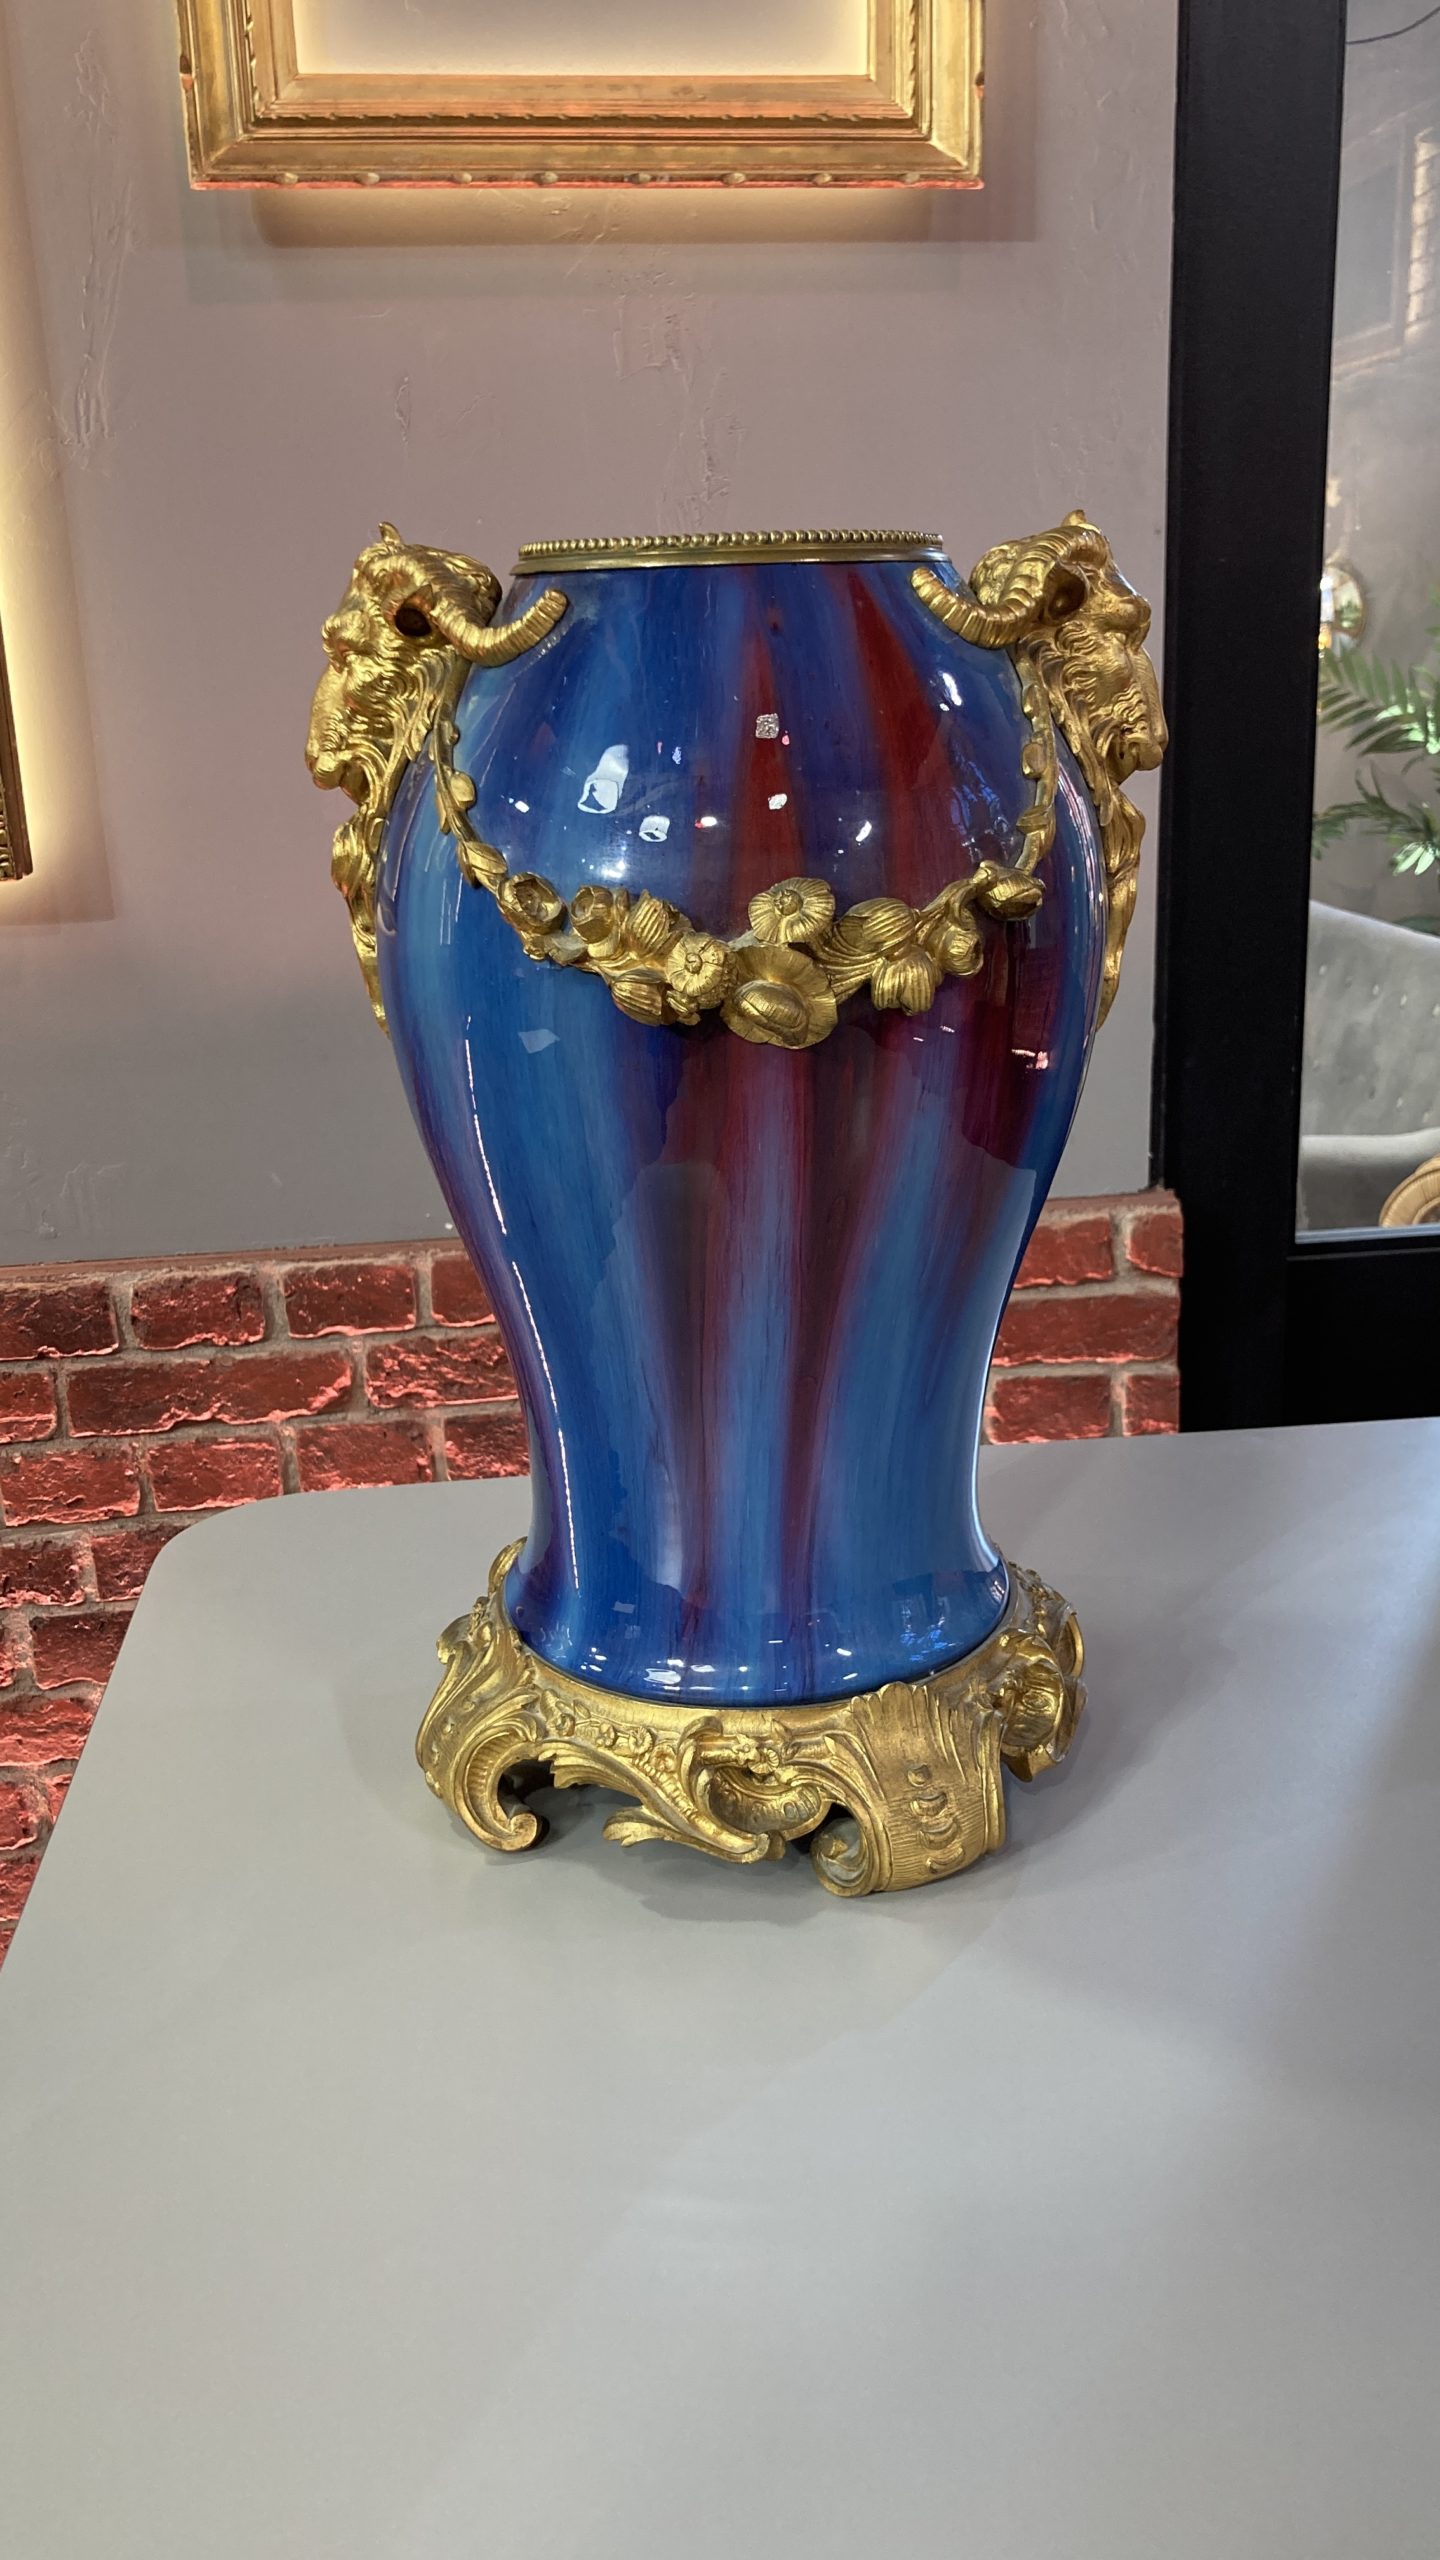 vase-cérémique-bleu-rouge-bronze-eugène-baudin-wolf-louis-XVI-aurore-morisse-antiquaire-décoration-antiquité-objet-ancien-liège-paris-affaire-conclue-marchad-art-antiques3